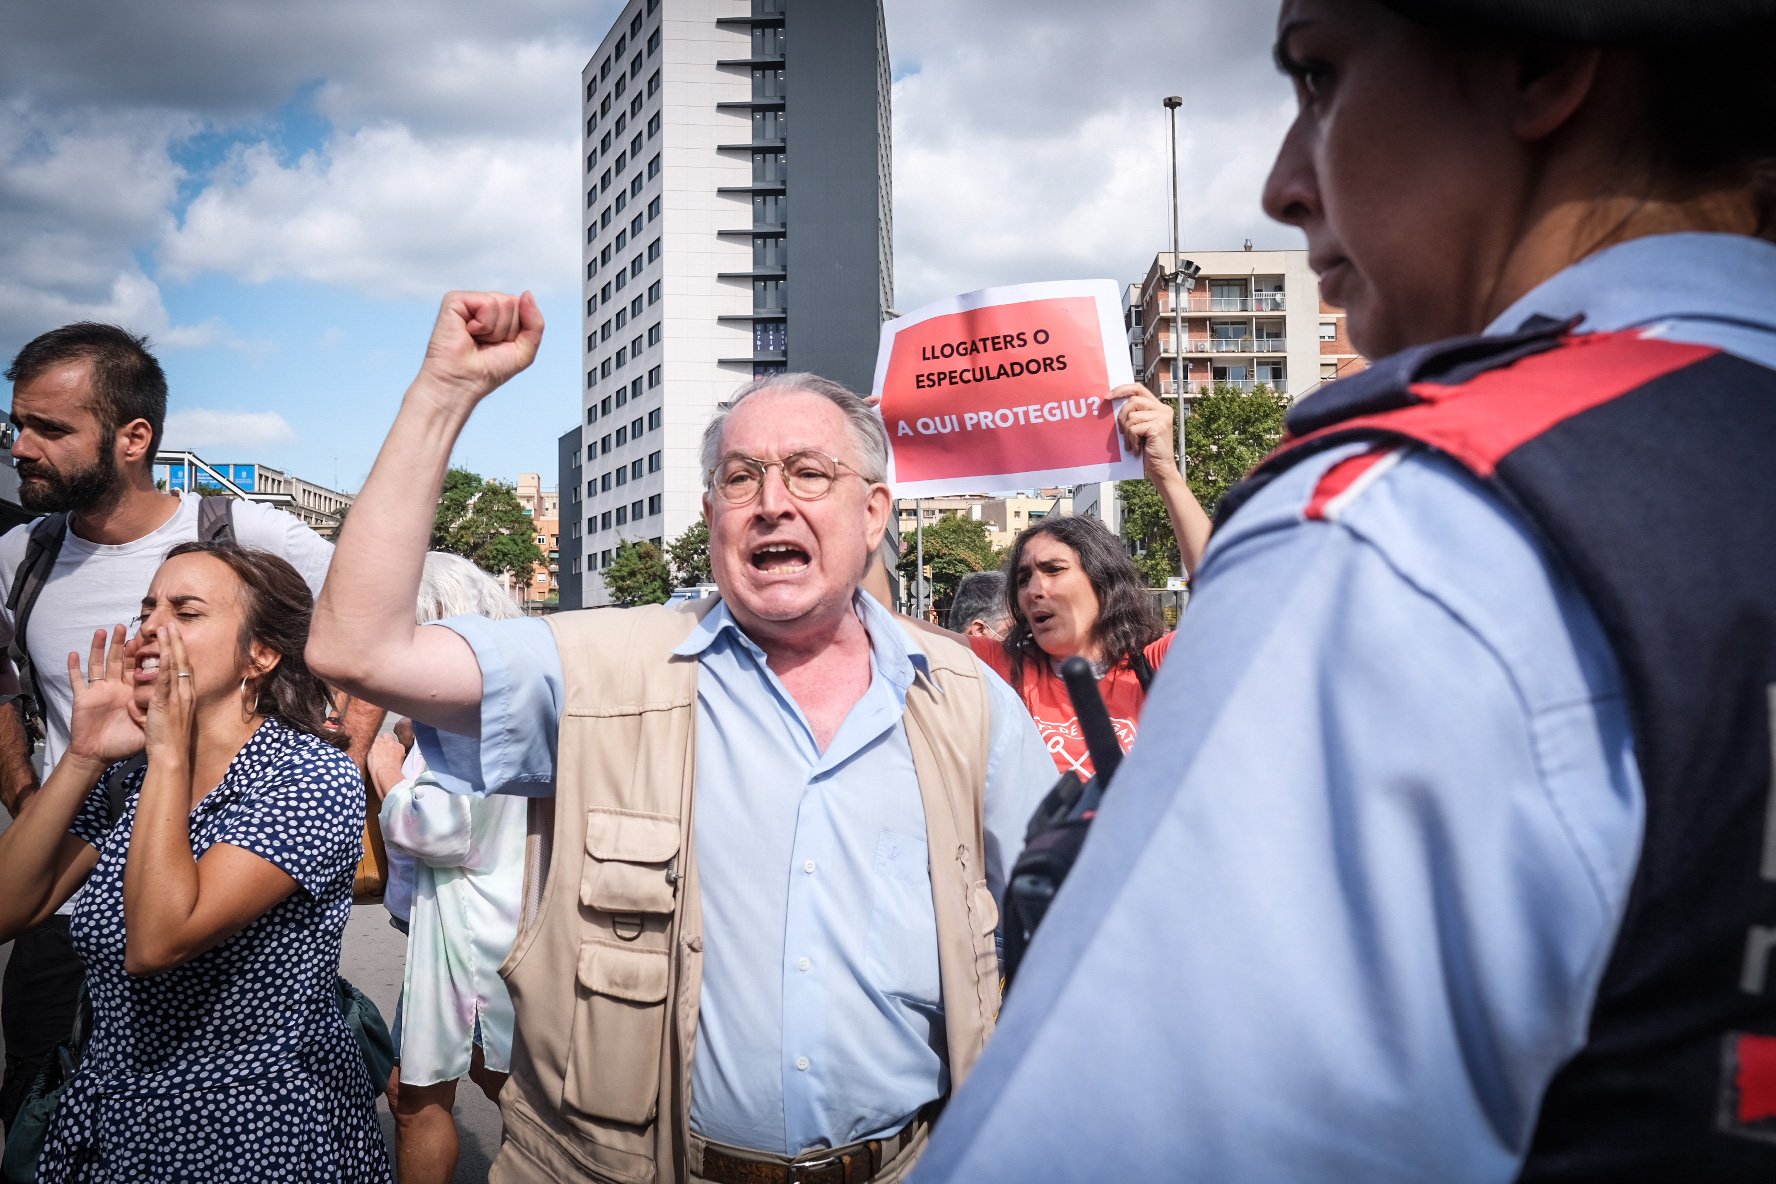 El Sindicat de Llogateres abuchea a la ministra Raquel Sánchez en Barcelona